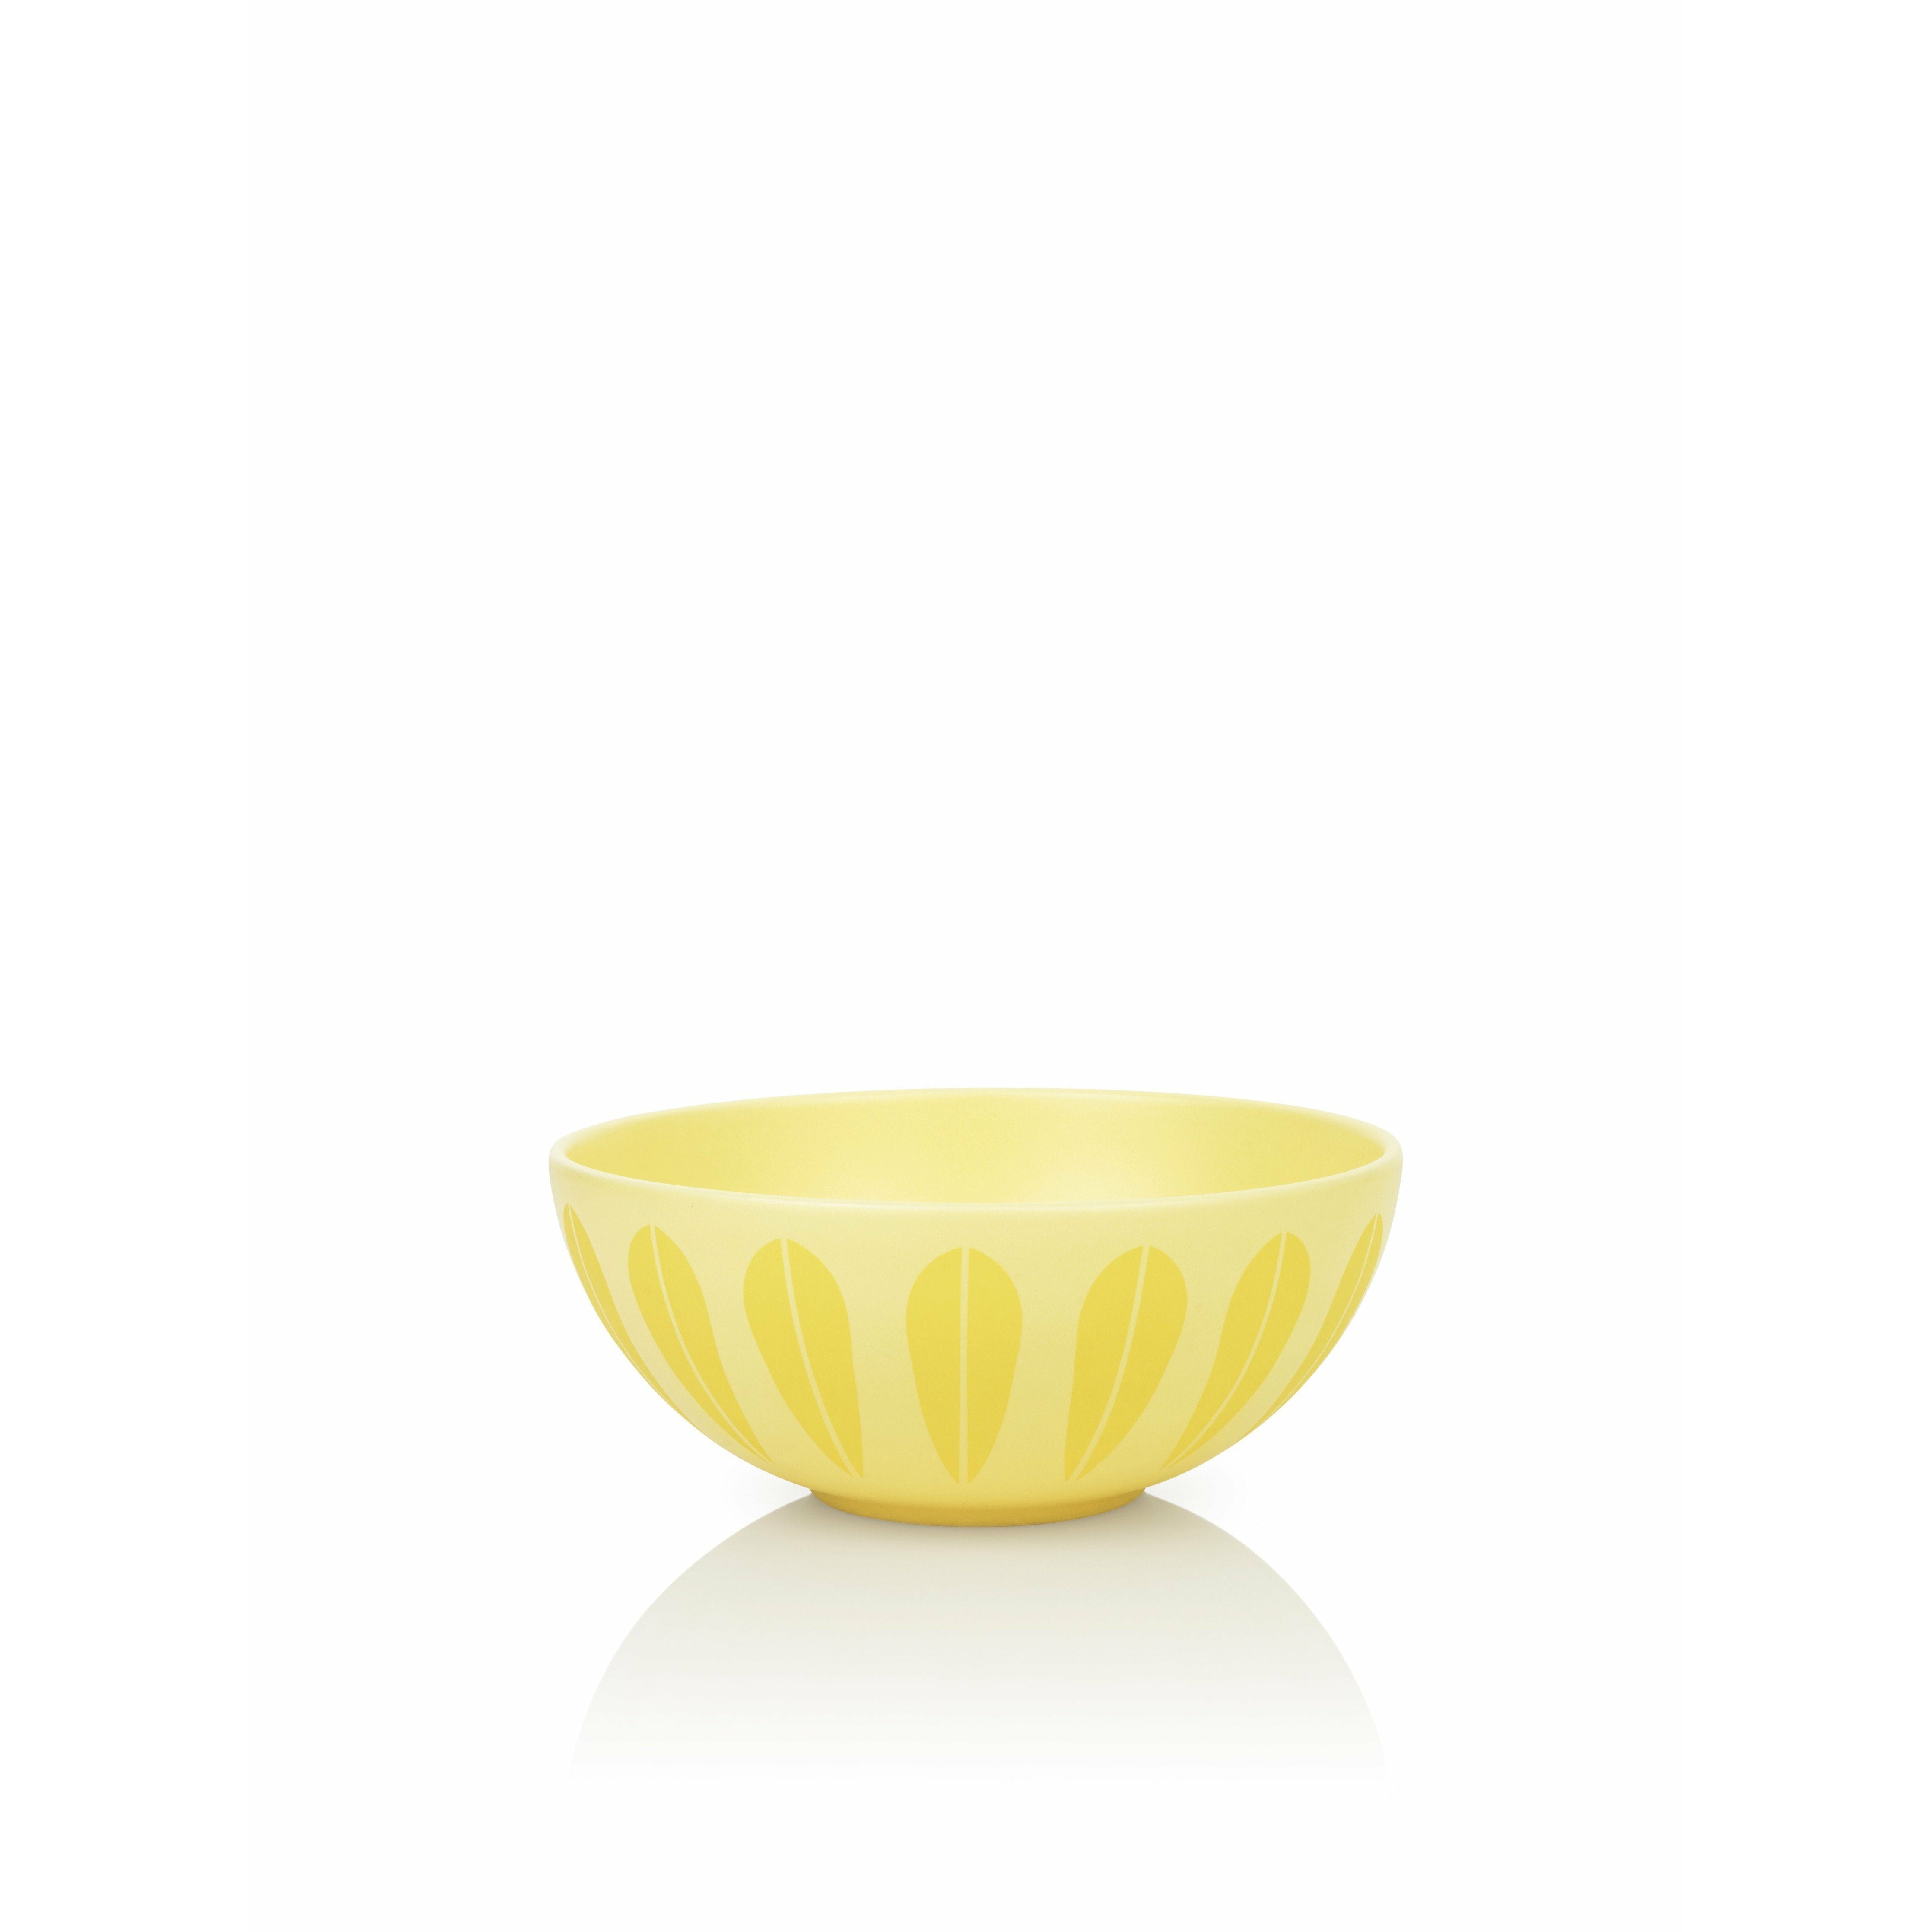 Lucie Kaas Arne Clausen Lotus Bowl Yellow, ø24 Cm